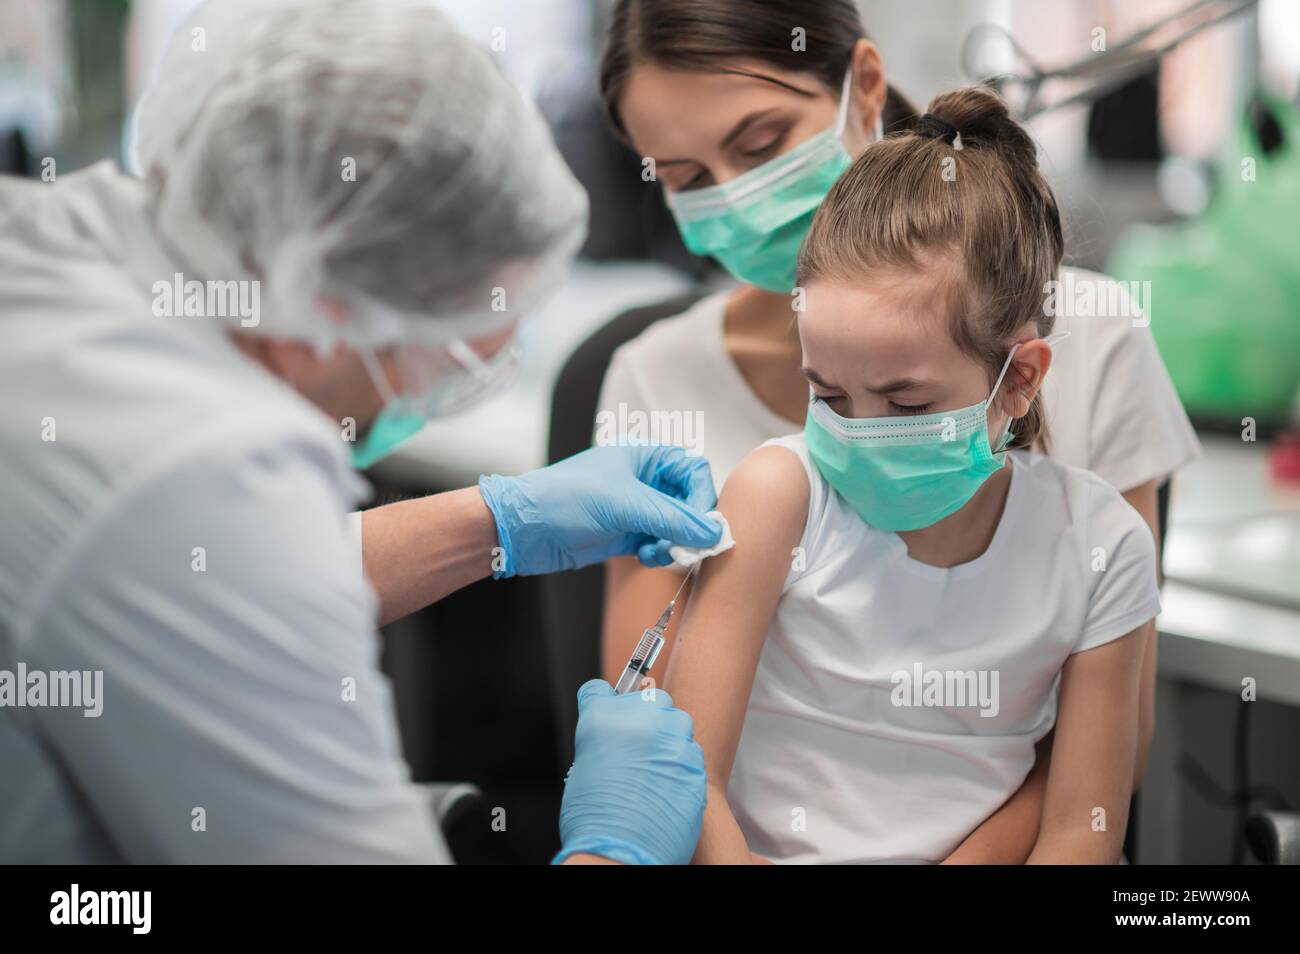 Une mère attentionnée a amené sa fille au bureau de vaccination pour se faire vacciner, elle a peur Banque D'Images